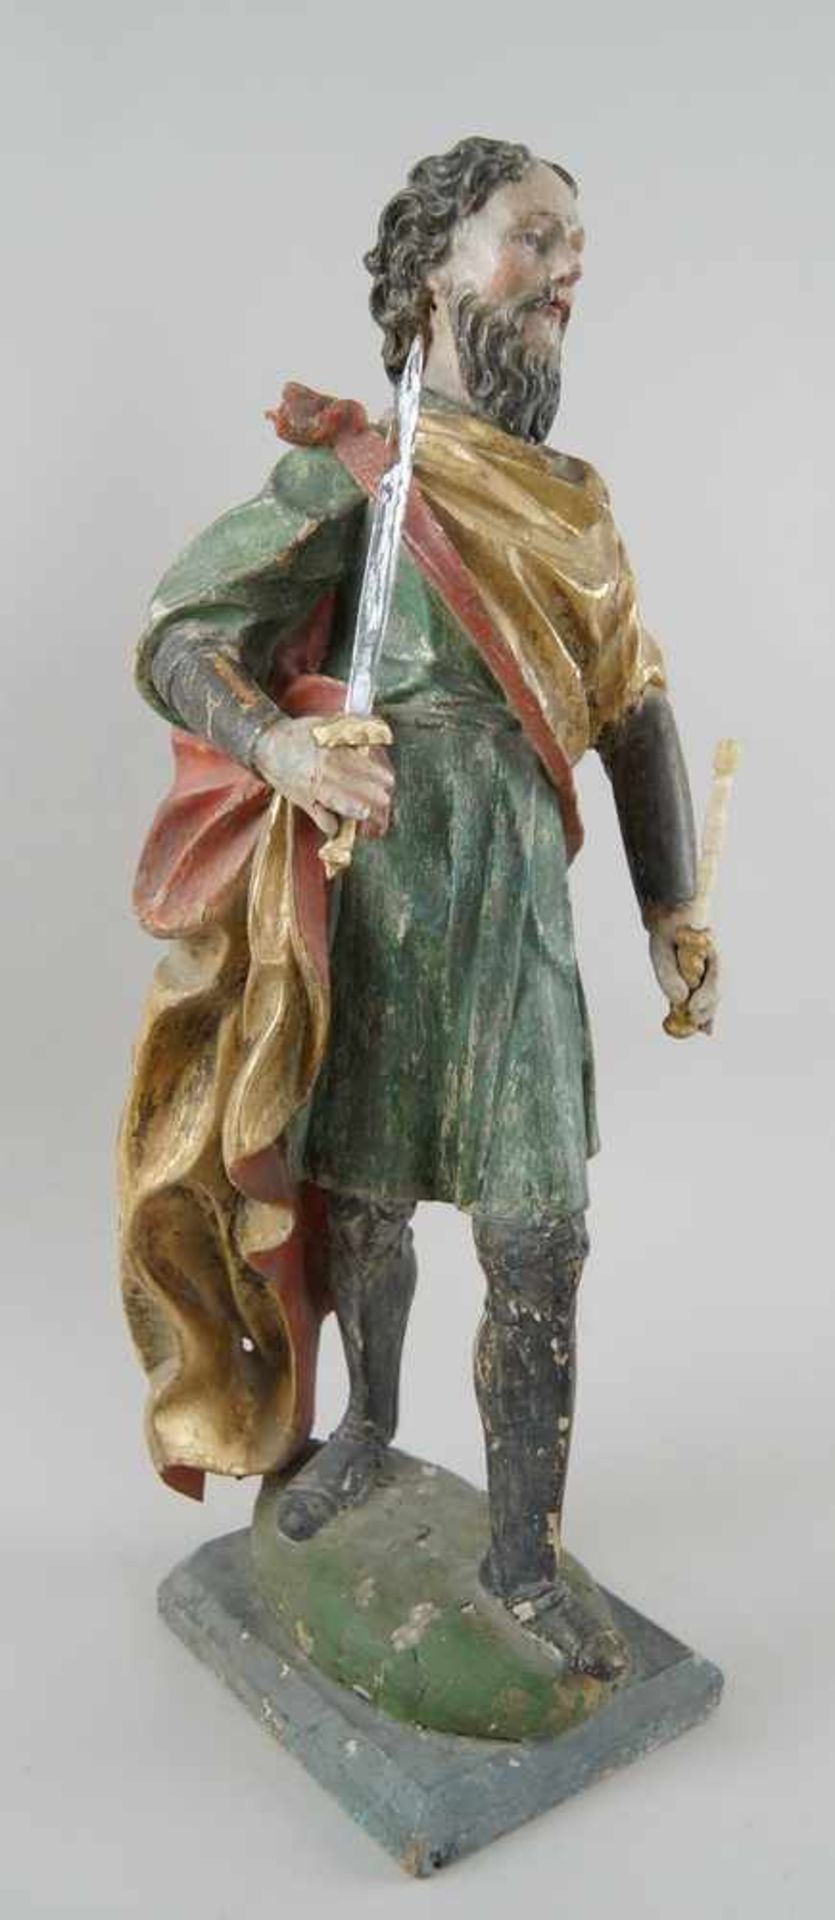 Stehender König, Holz geschnitzte und gefasste Skulptur, 18. JH, H 58 cm- - -24.00 % buyer's premium